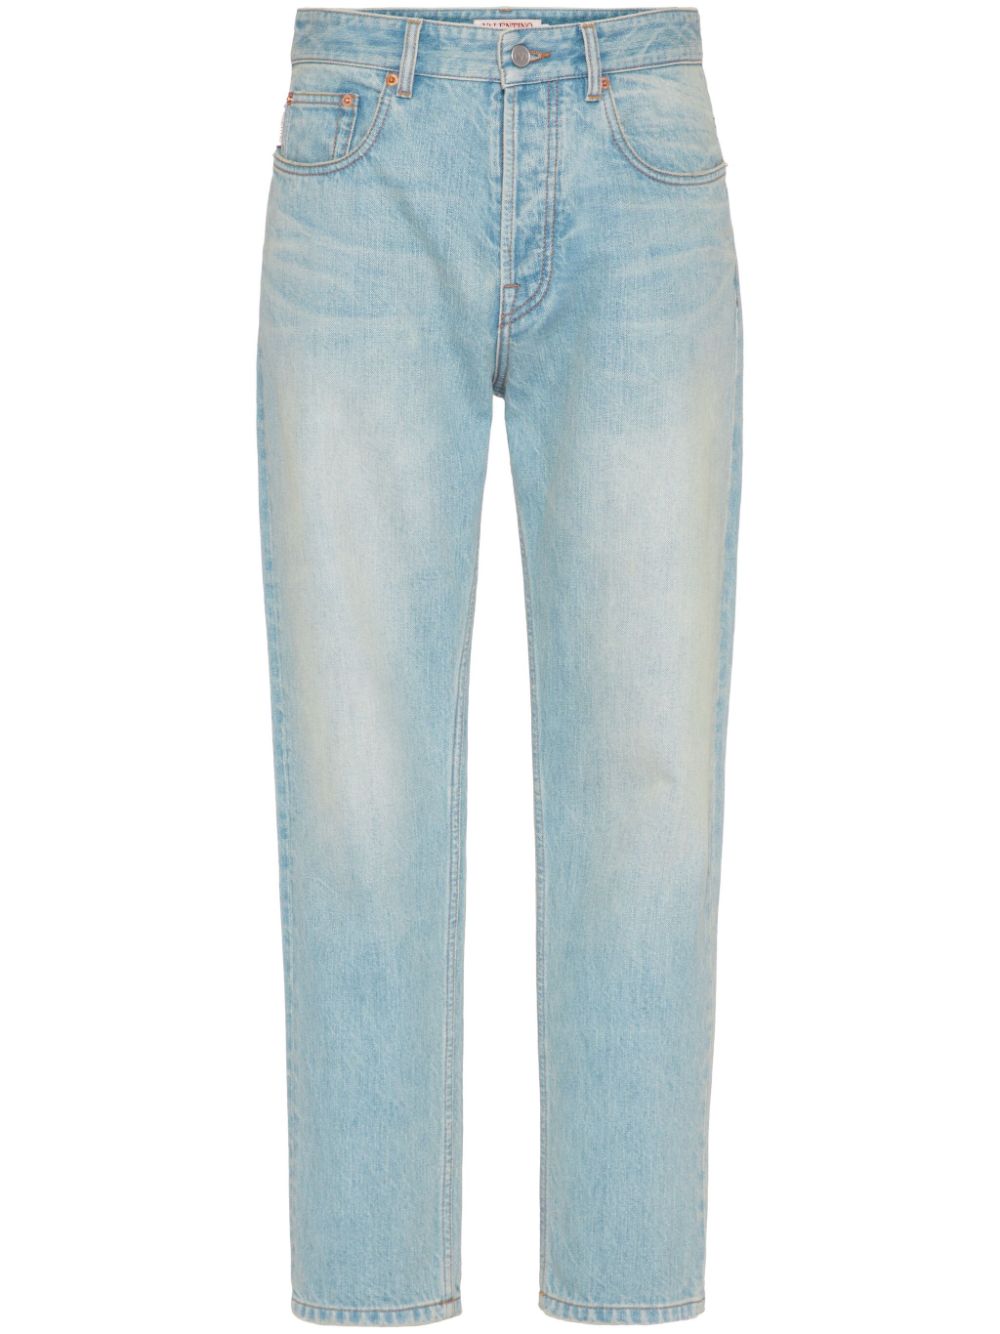 Quần jeans màu xanh băng giảm cho nam giới